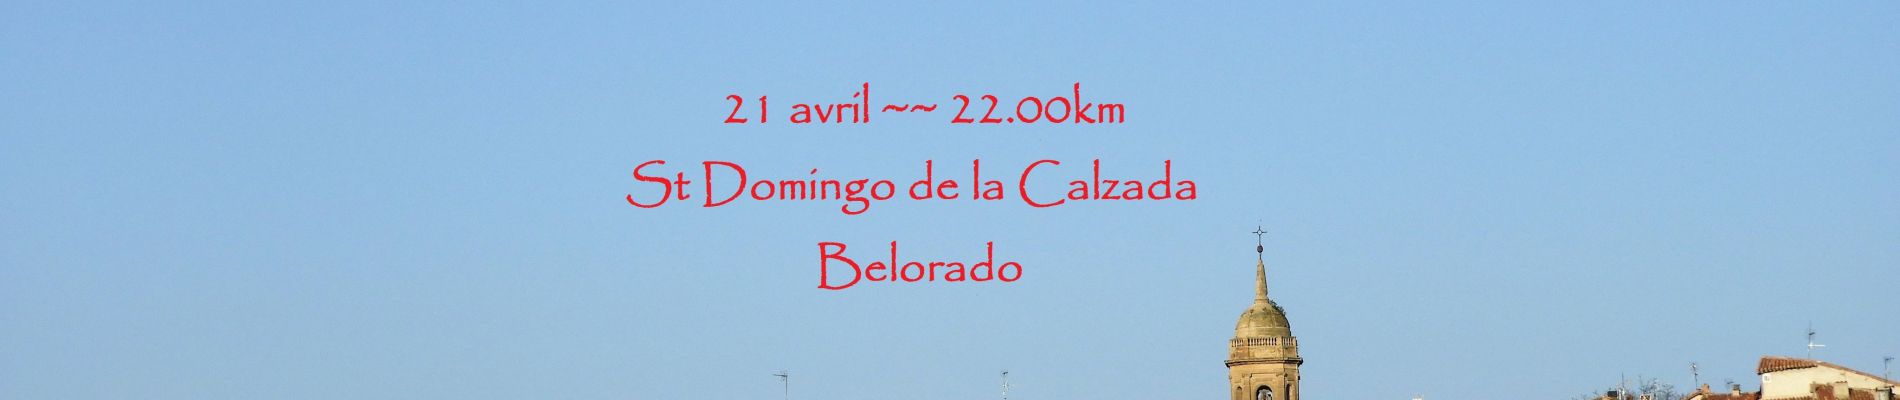 Percorso Marcia Santo Domingo de la Calzada - 21.04.18 Santo Domingo de la Calzada--Beloradu - Photo